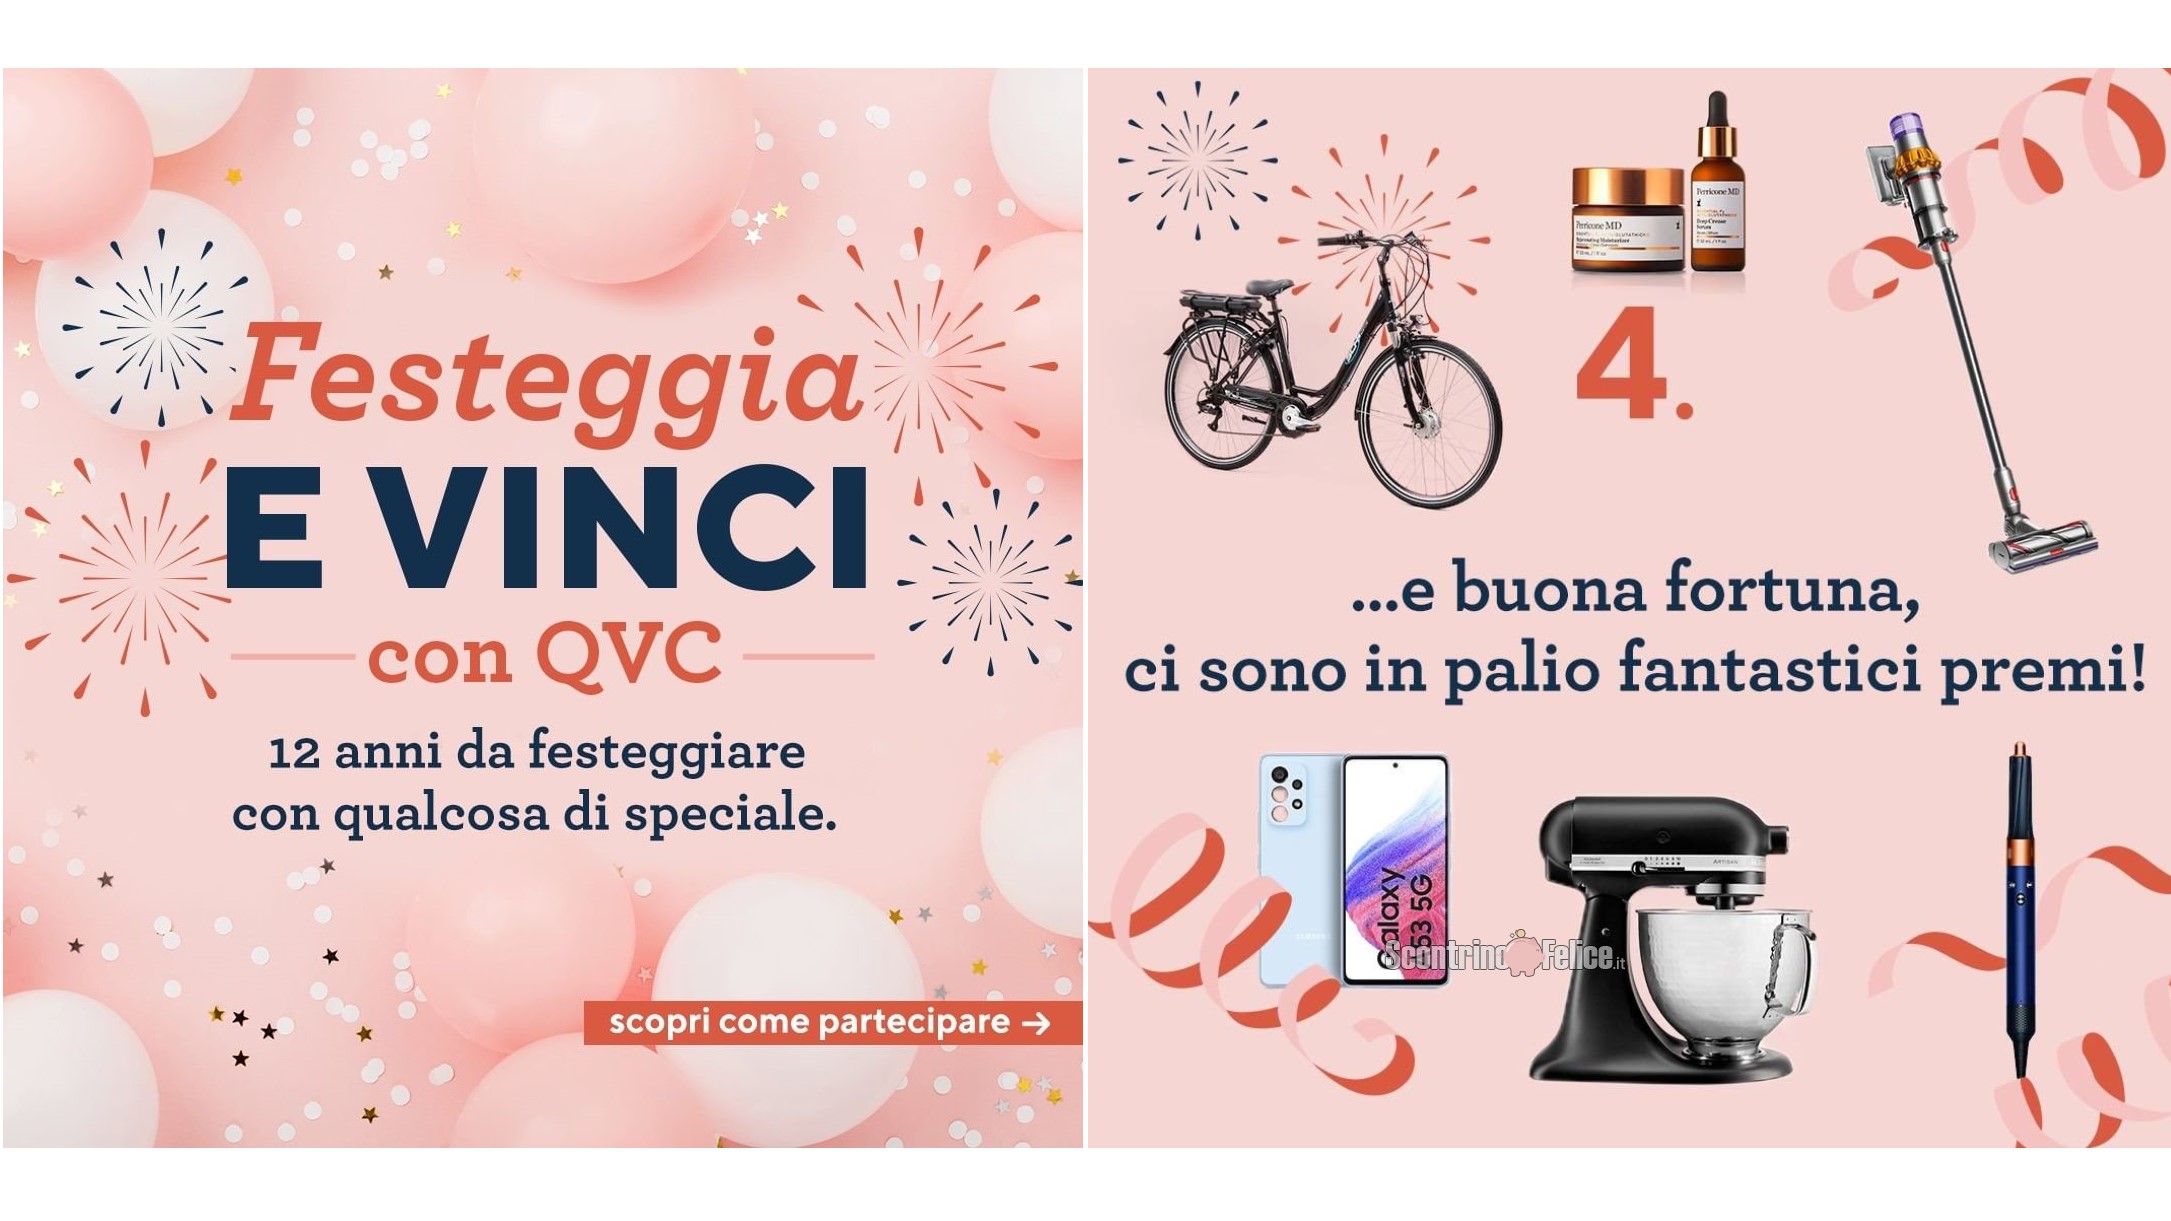 Giveaway "Festeggia e Vinci con QVC": in palio 12 fantastici premi!